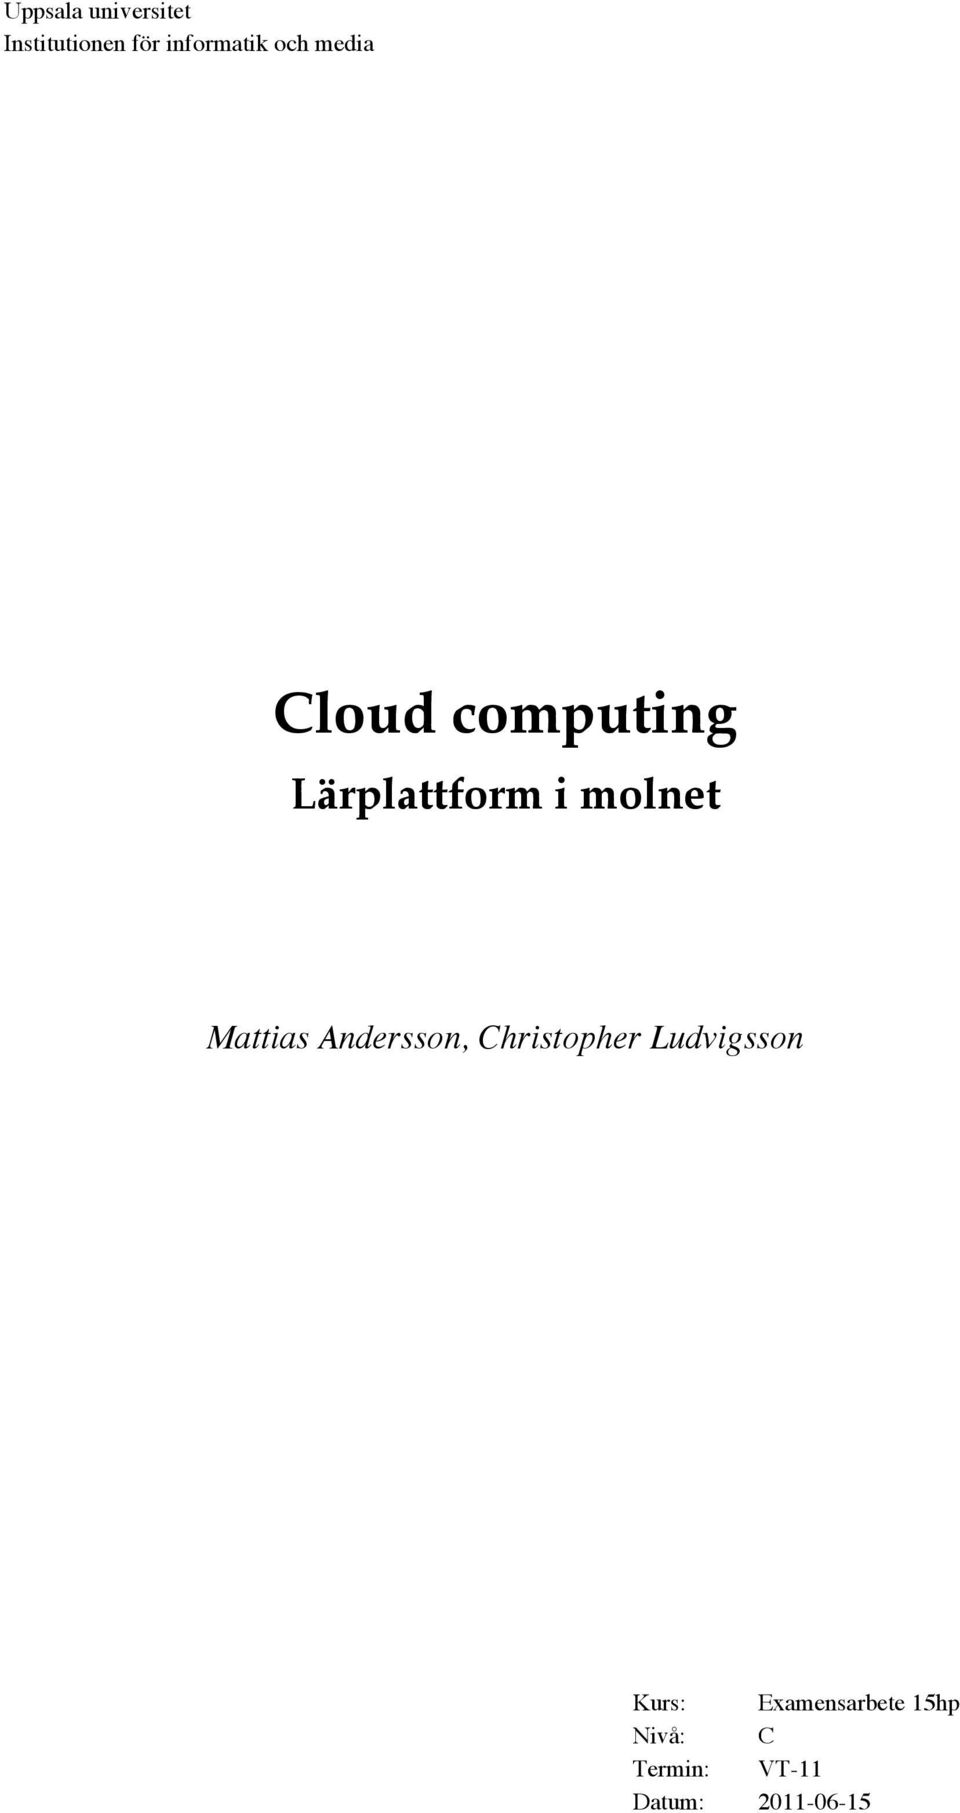 Mattias Andersson, Christopher Ludvigsson Kurs: